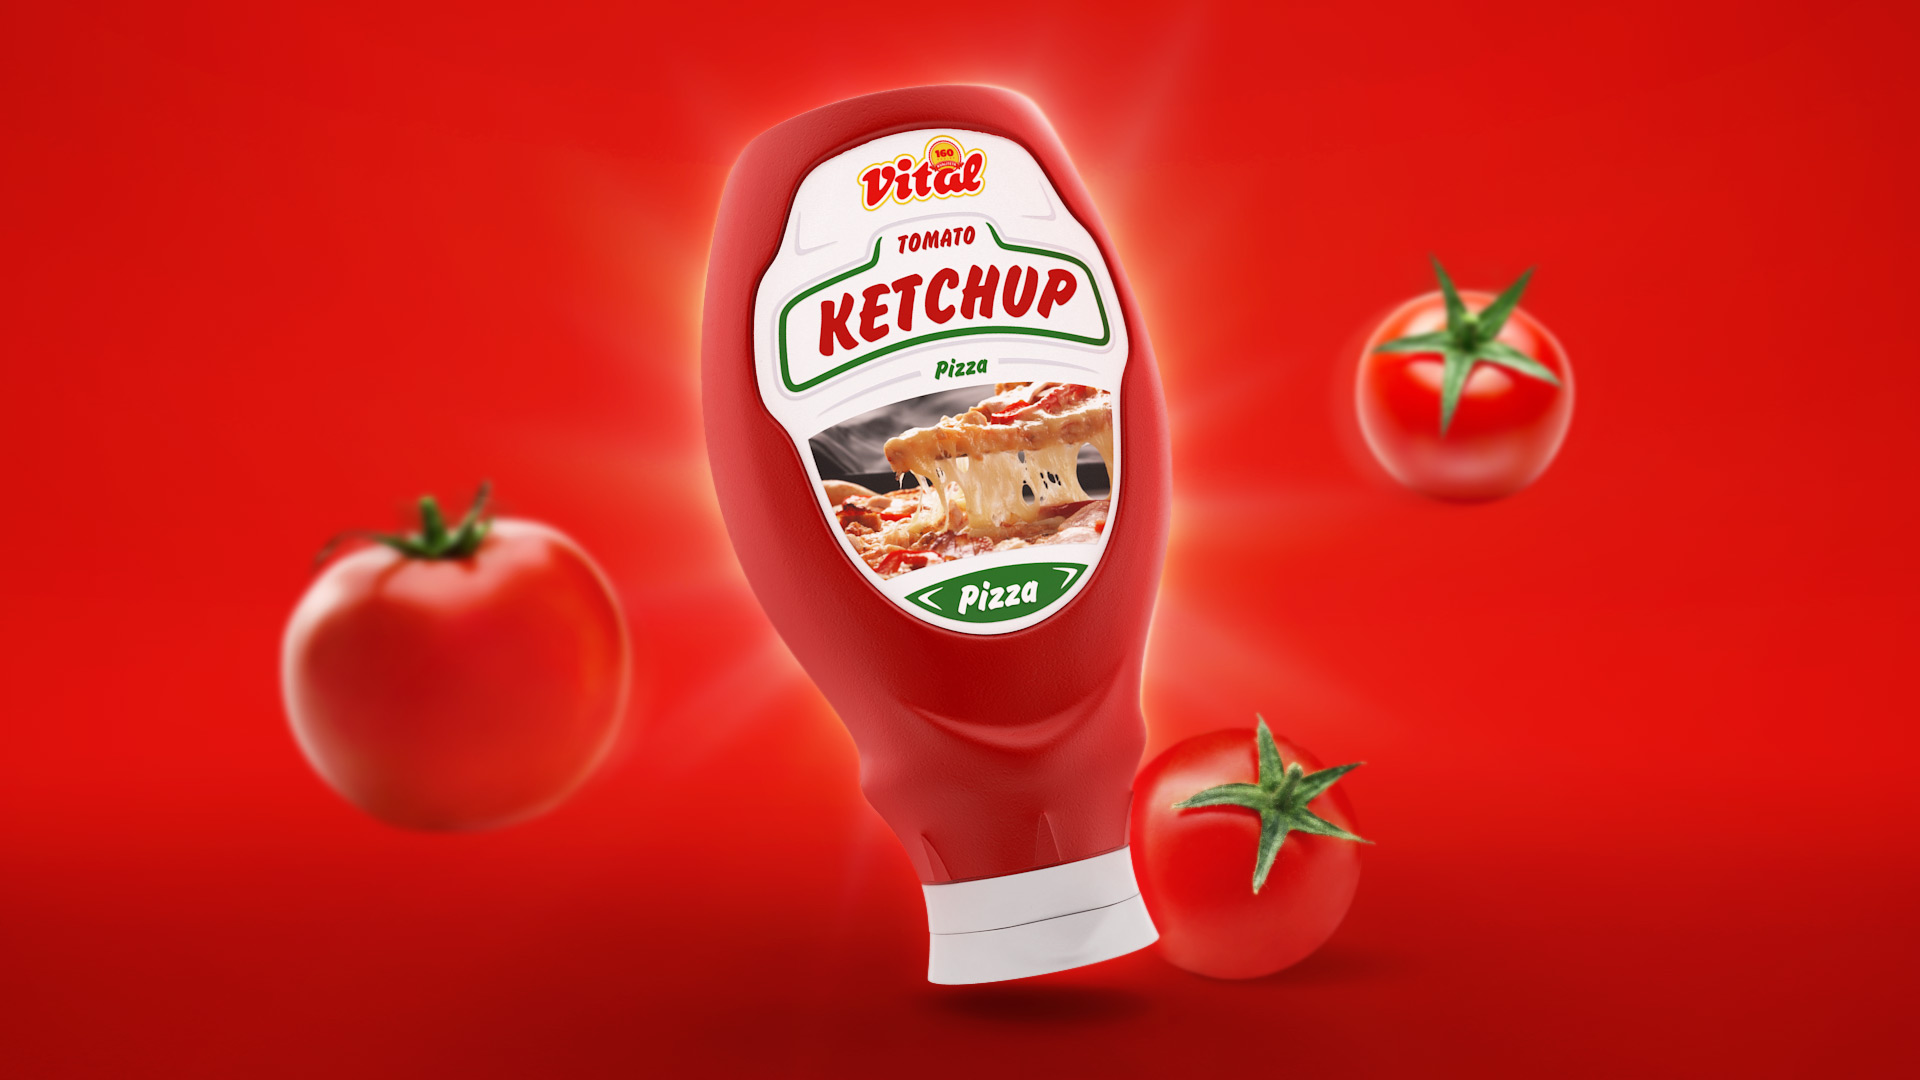 Vital tomato ketchup packaging design - visual